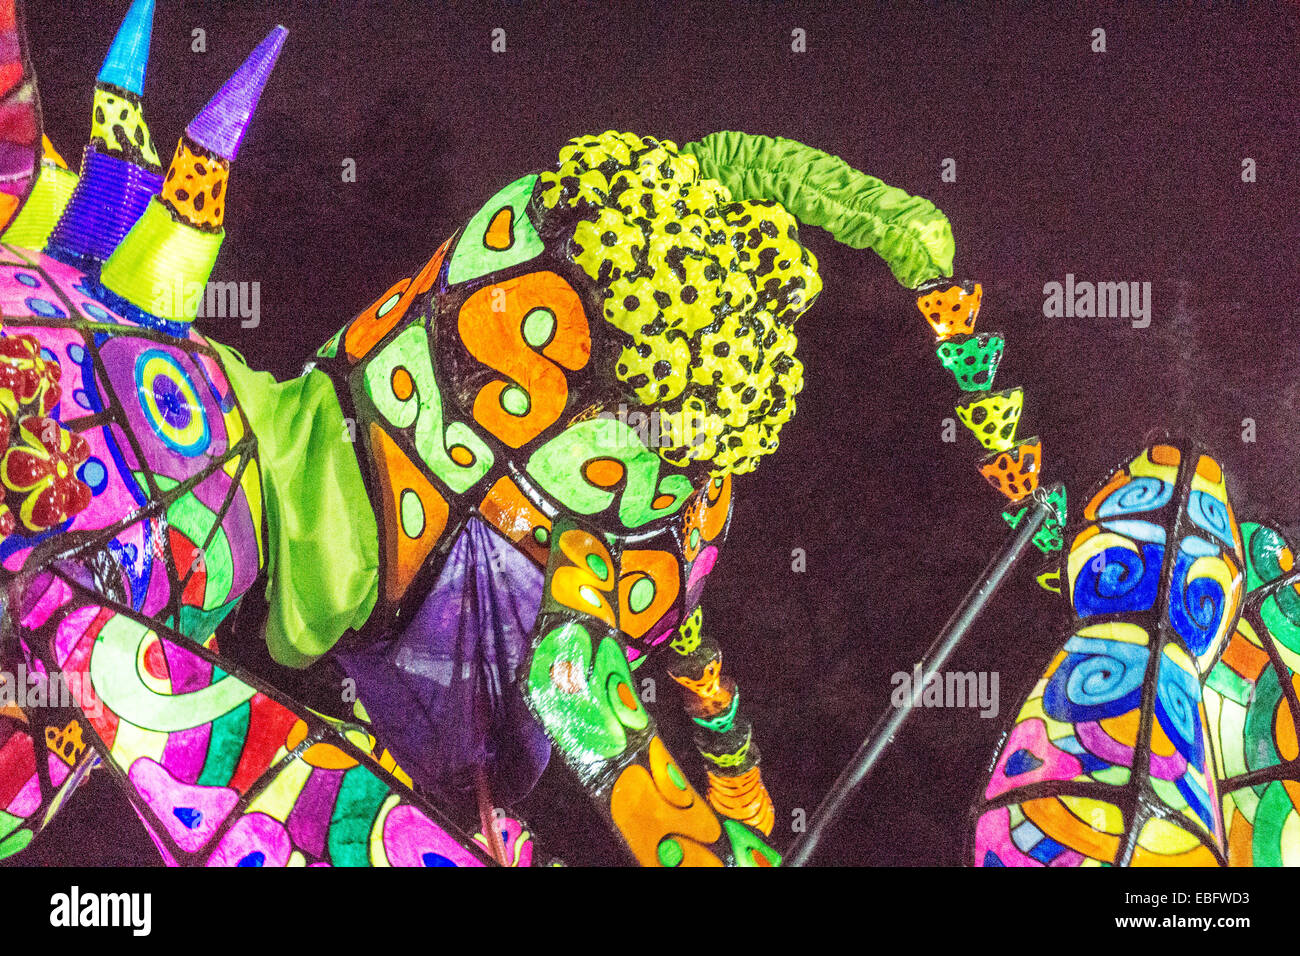 Ciudad de México, México, 29 de noviembre, 2014: monstruos iluminada del desfile de Alebrijes monumentales, criaturas fantásticas, llegar a la Plaza Luis Cabrera para juzgar después de desfilar por las calles de noche de la Orizaba & Roma neigborhoods Crédito: Dorothy Alexander/Alamy Live News Foto de stock